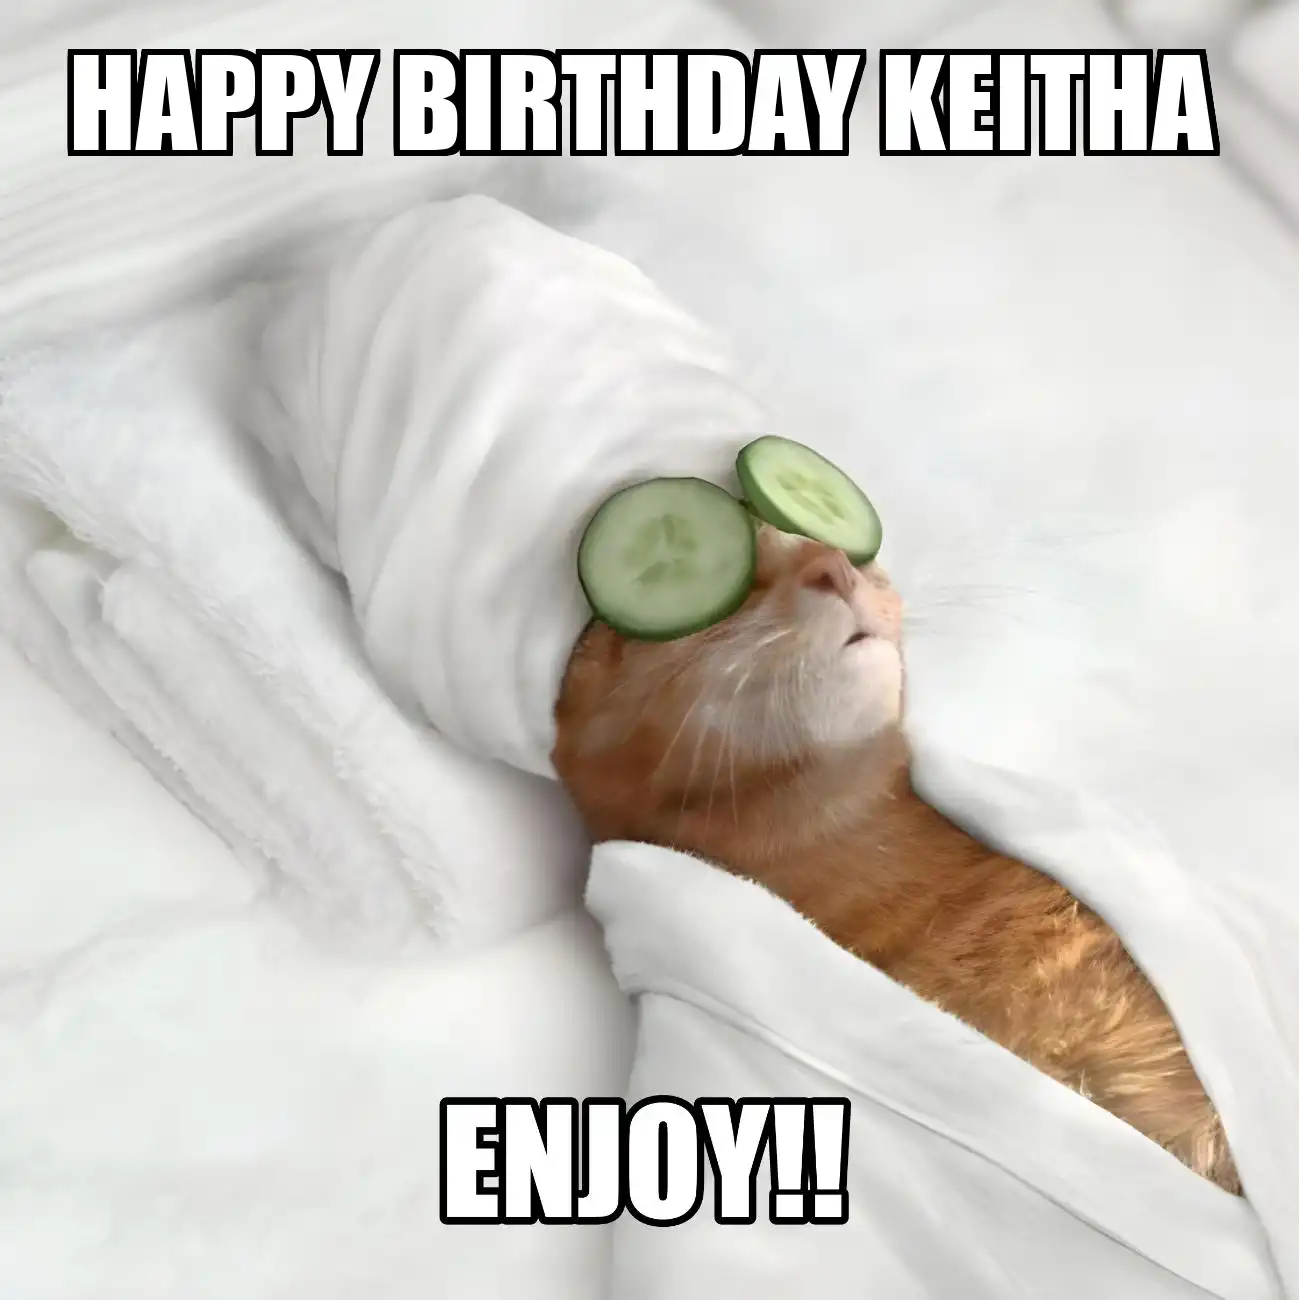 Happy Birthday Keitha Enjoy Cat Meme